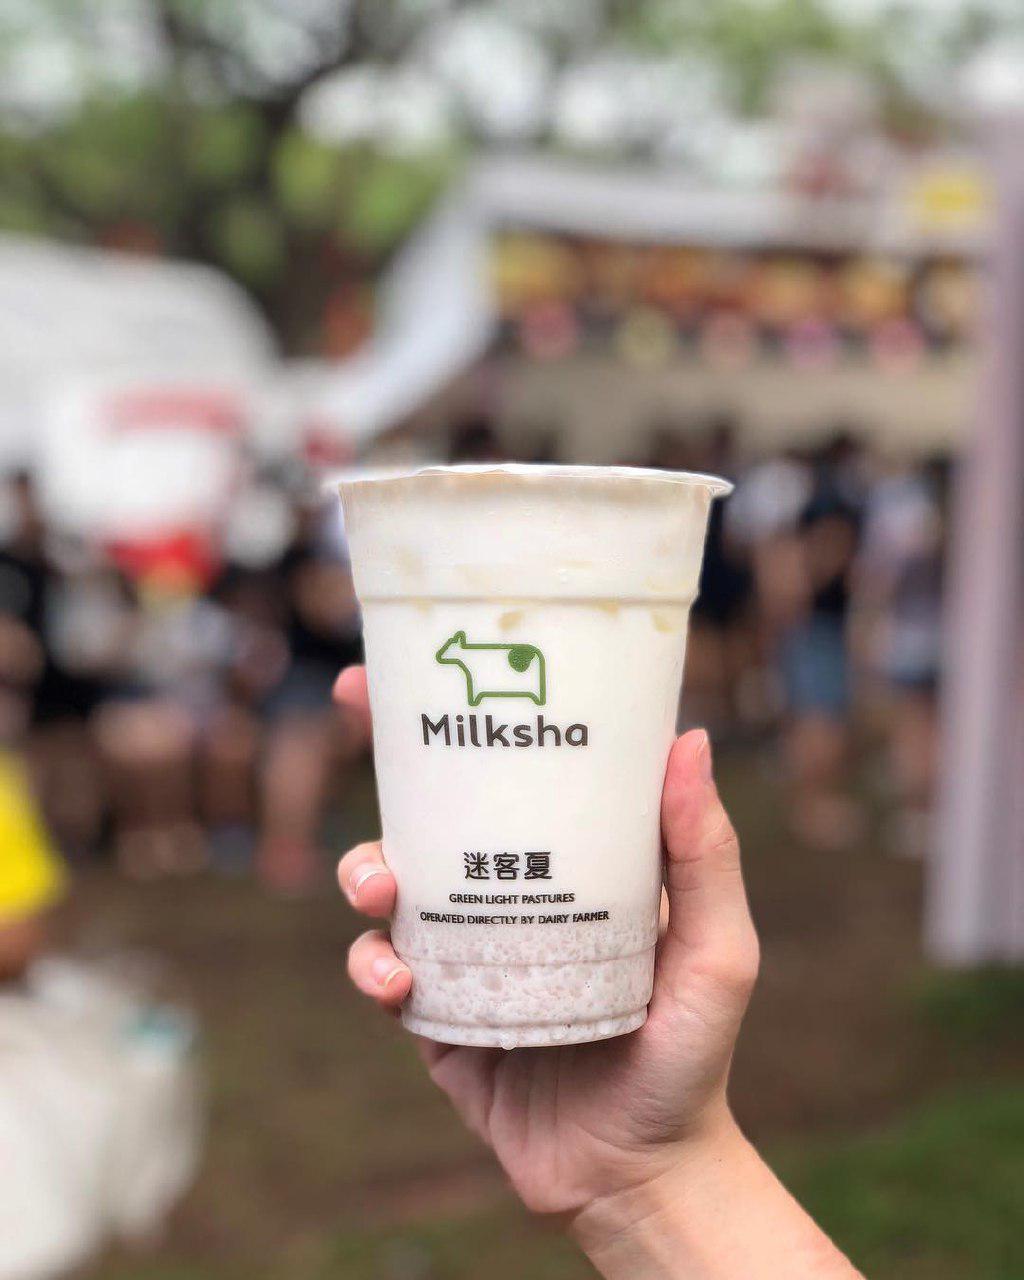 Milksha Singapore - launch in Singapore